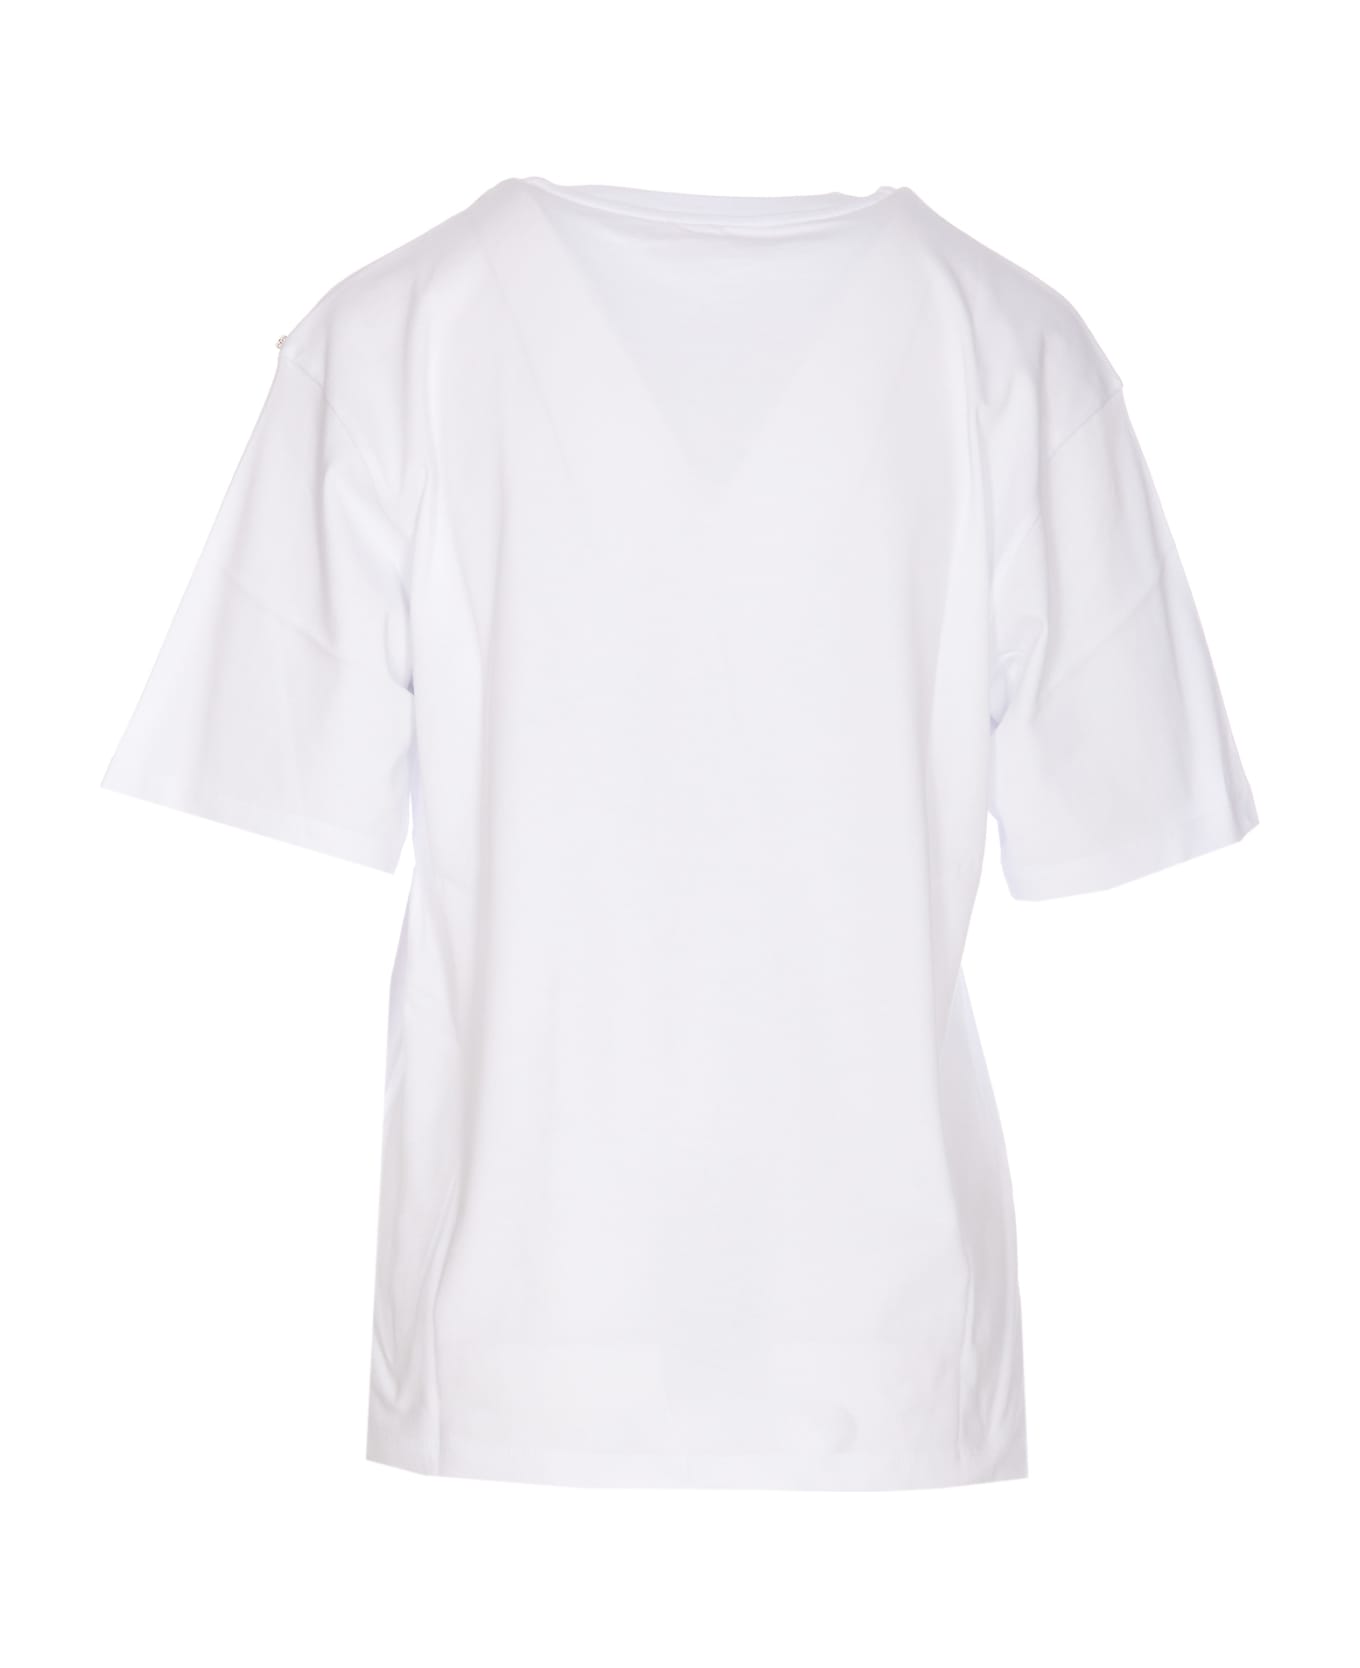 SportMax Jersey Cotton Print T-shirt - White Tシャツ